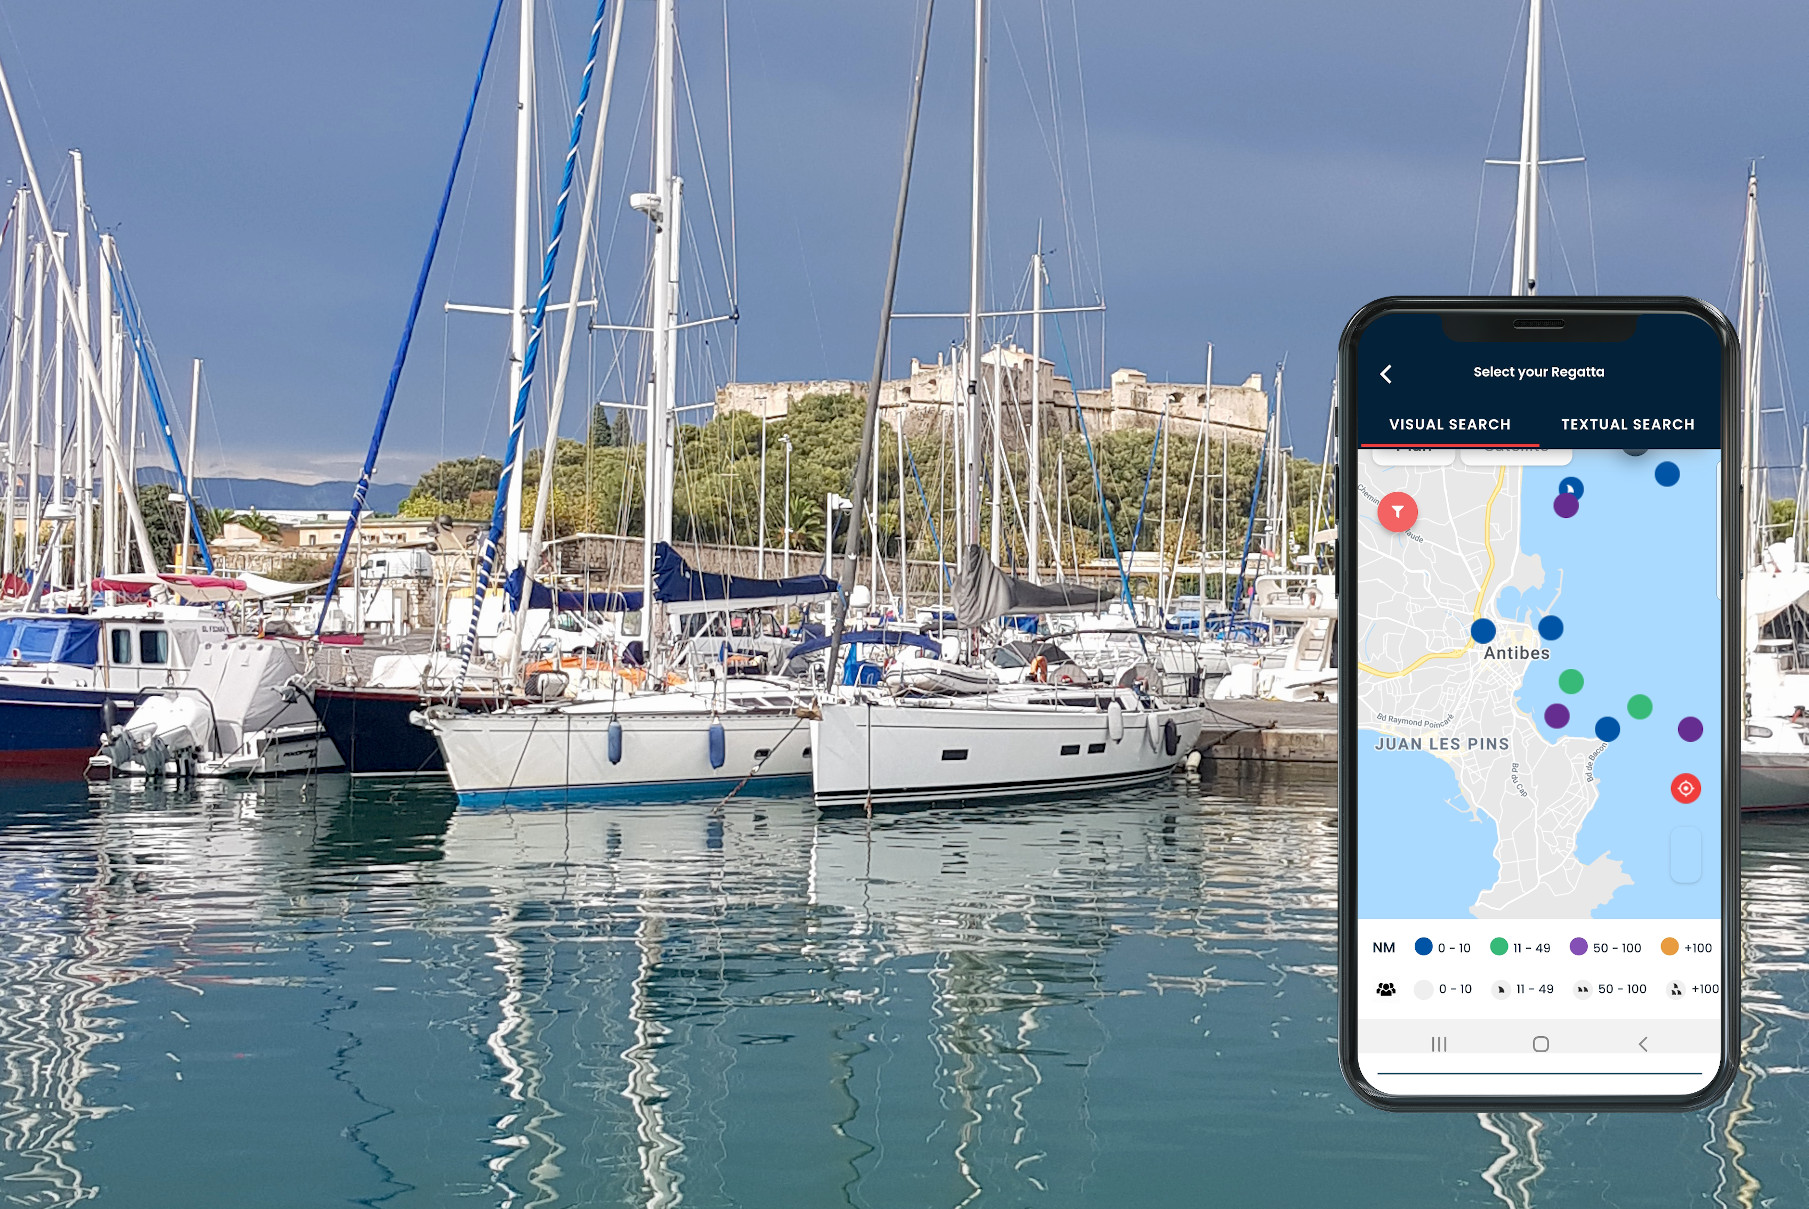 7 défis de voile disponibles à Antibes - Côte d'Azur